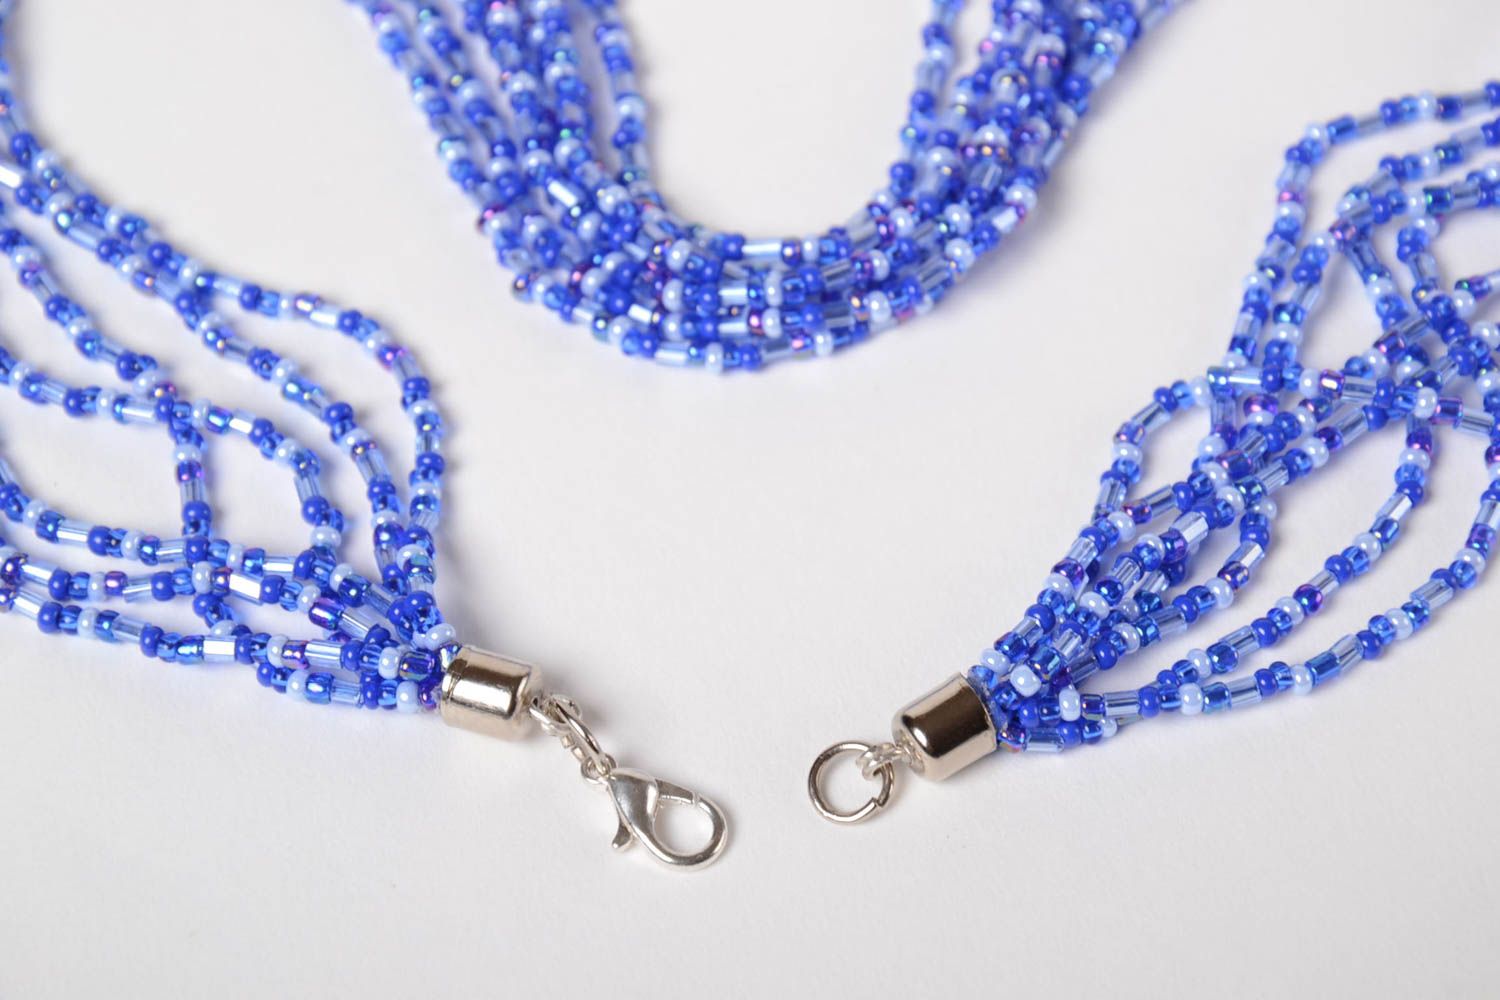 Ожерелье из бисера длинное голубое красивое на шею женское ручная работа фото 3